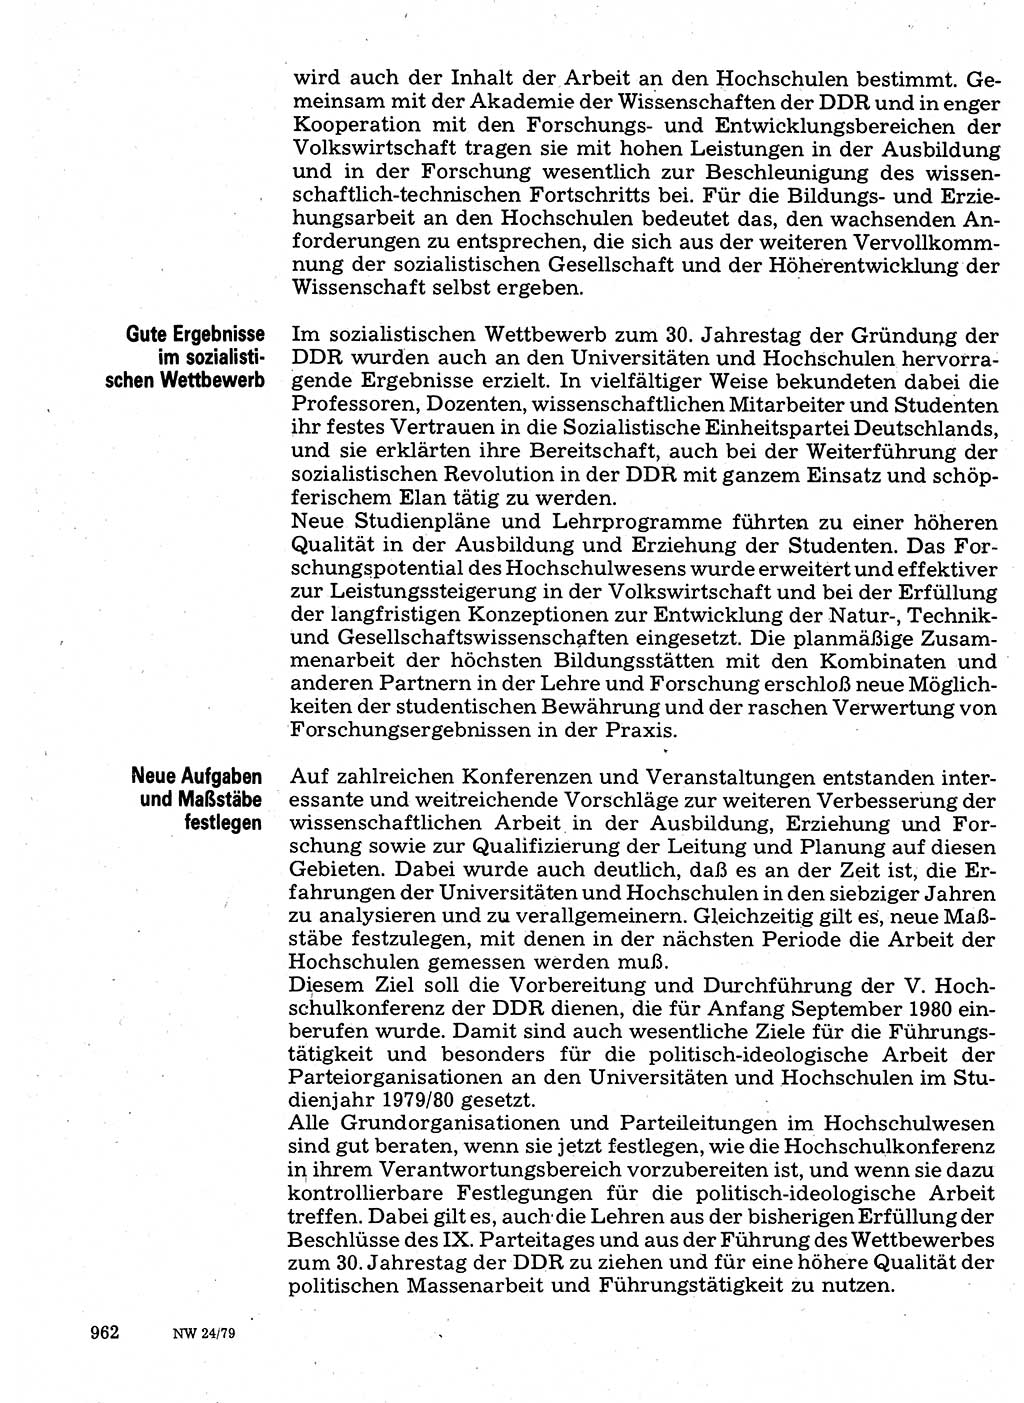 Neuer Weg (NW), Organ des Zentralkomitees (ZK) der SED (Sozialistische Einheitspartei Deutschlands) für Fragen des Parteilebens, 34. Jahrgang [Deutsche Demokratische Republik (DDR)] 1979, Seite 962 (NW ZK SED DDR 1979, S. 962)